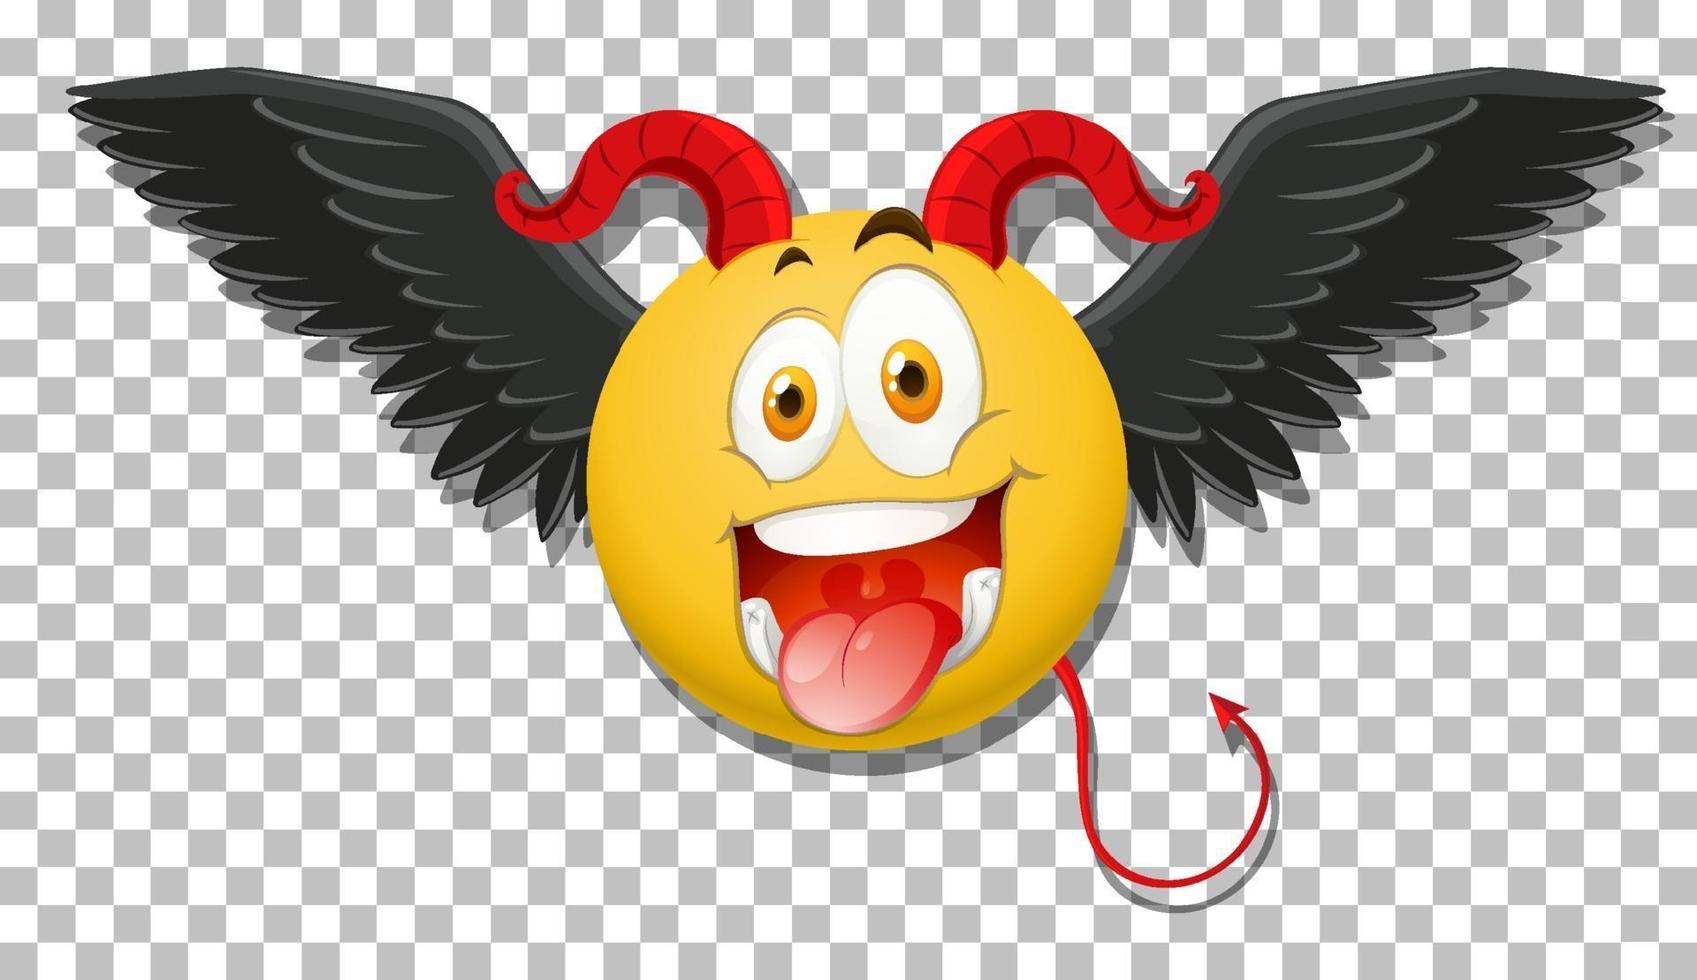 Devil emoticon with facial expression vector